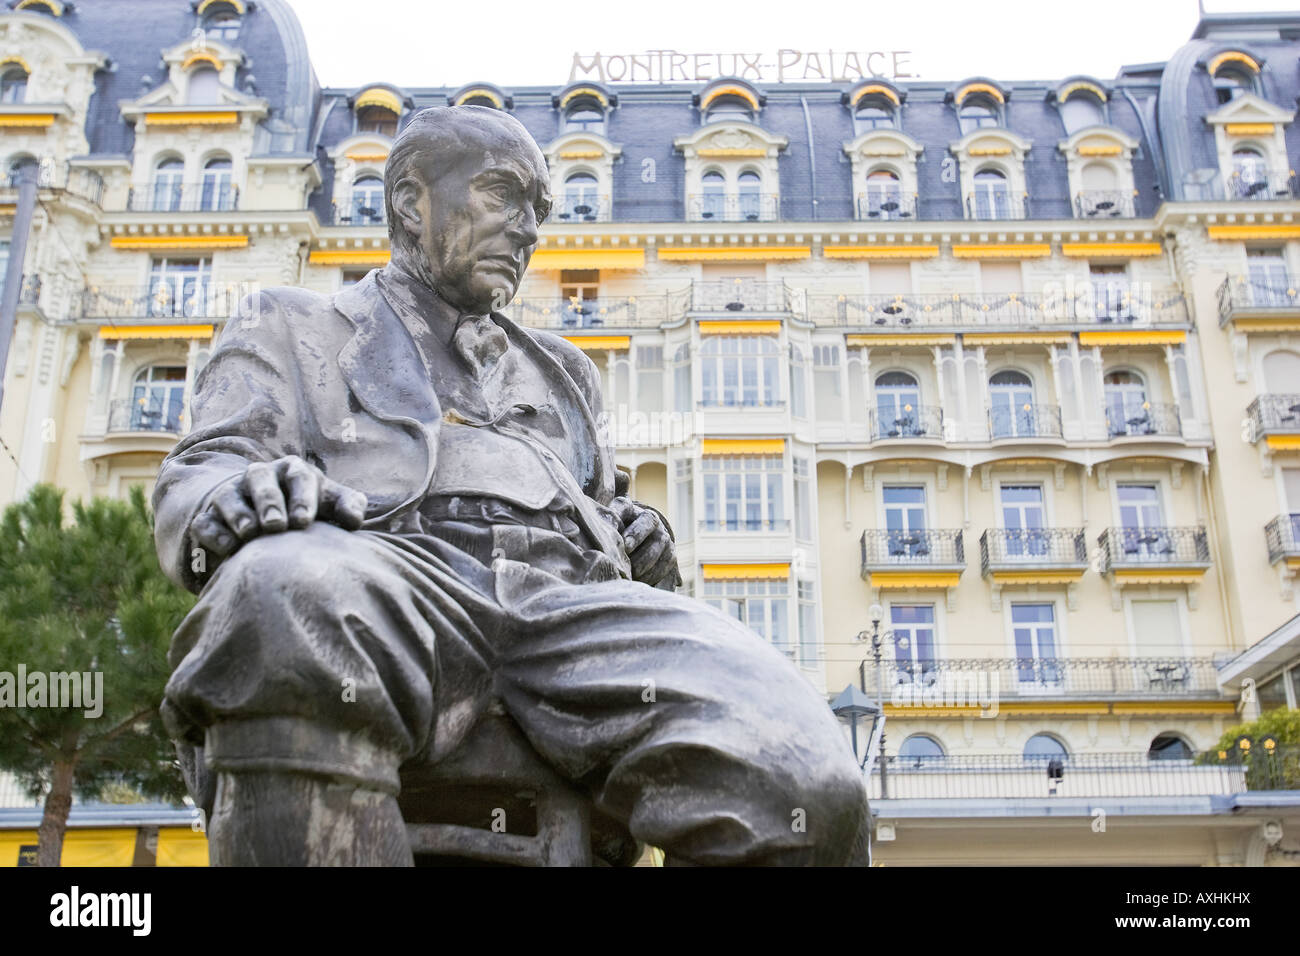 Una statua del writer Russo-americano Vladimir Nabokov davanti al Palace Hotel a Montreux in Svizzera dove ha vissuto Foto Stock